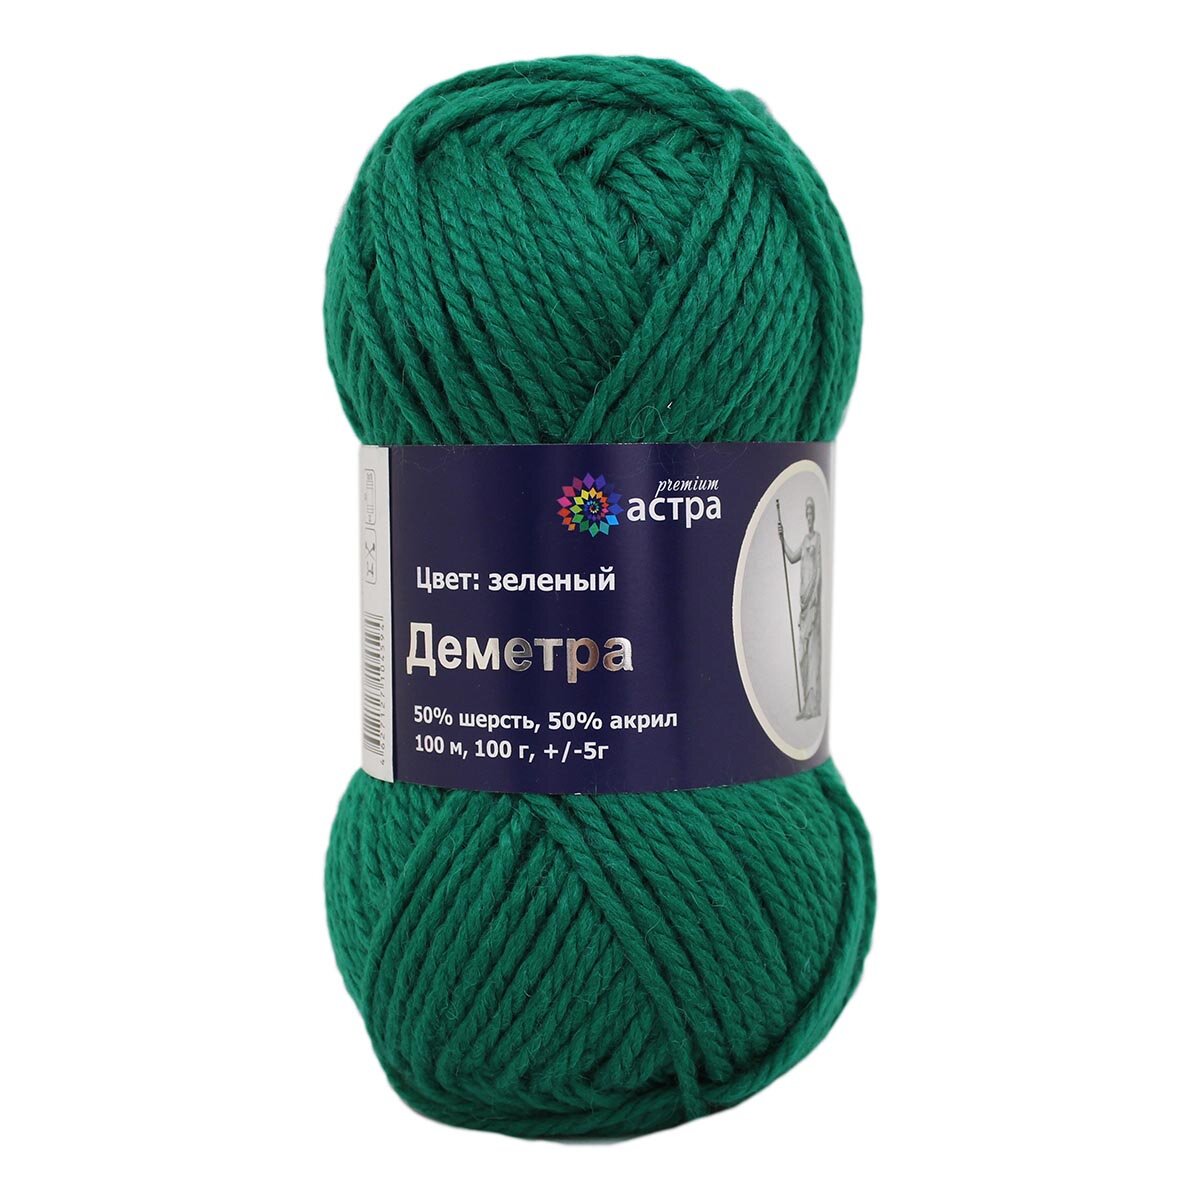 Пряжа для вязания Astra Premium 'Деметра', 100, 100м (50% шерсть, 50% акрил) (09 зеленый), 3 мотка